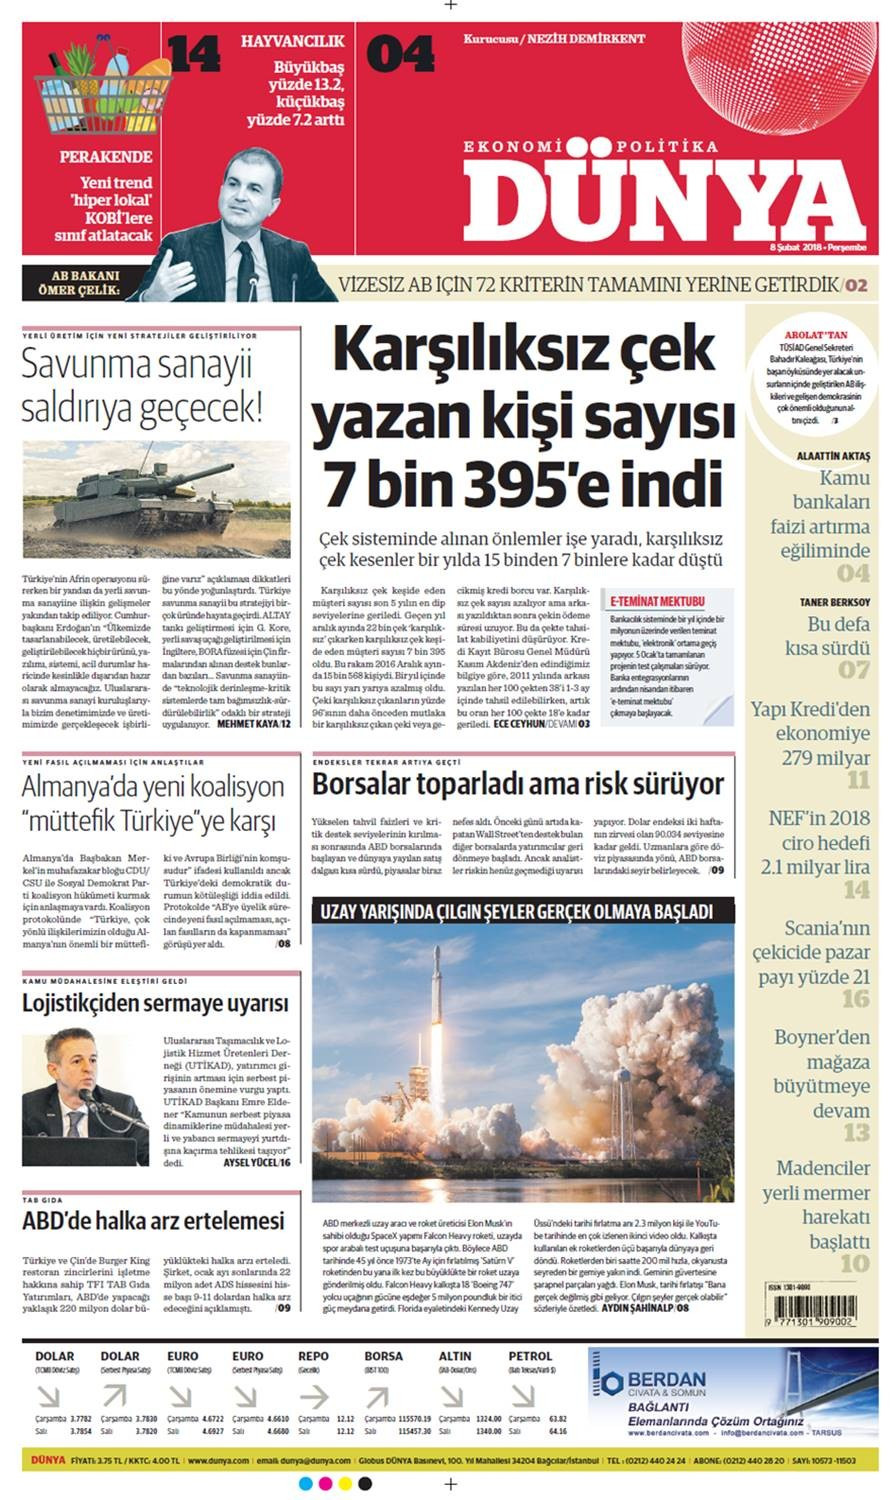 Günün gazete manşetleri (8 Şubat 2018) - Sayfa 1